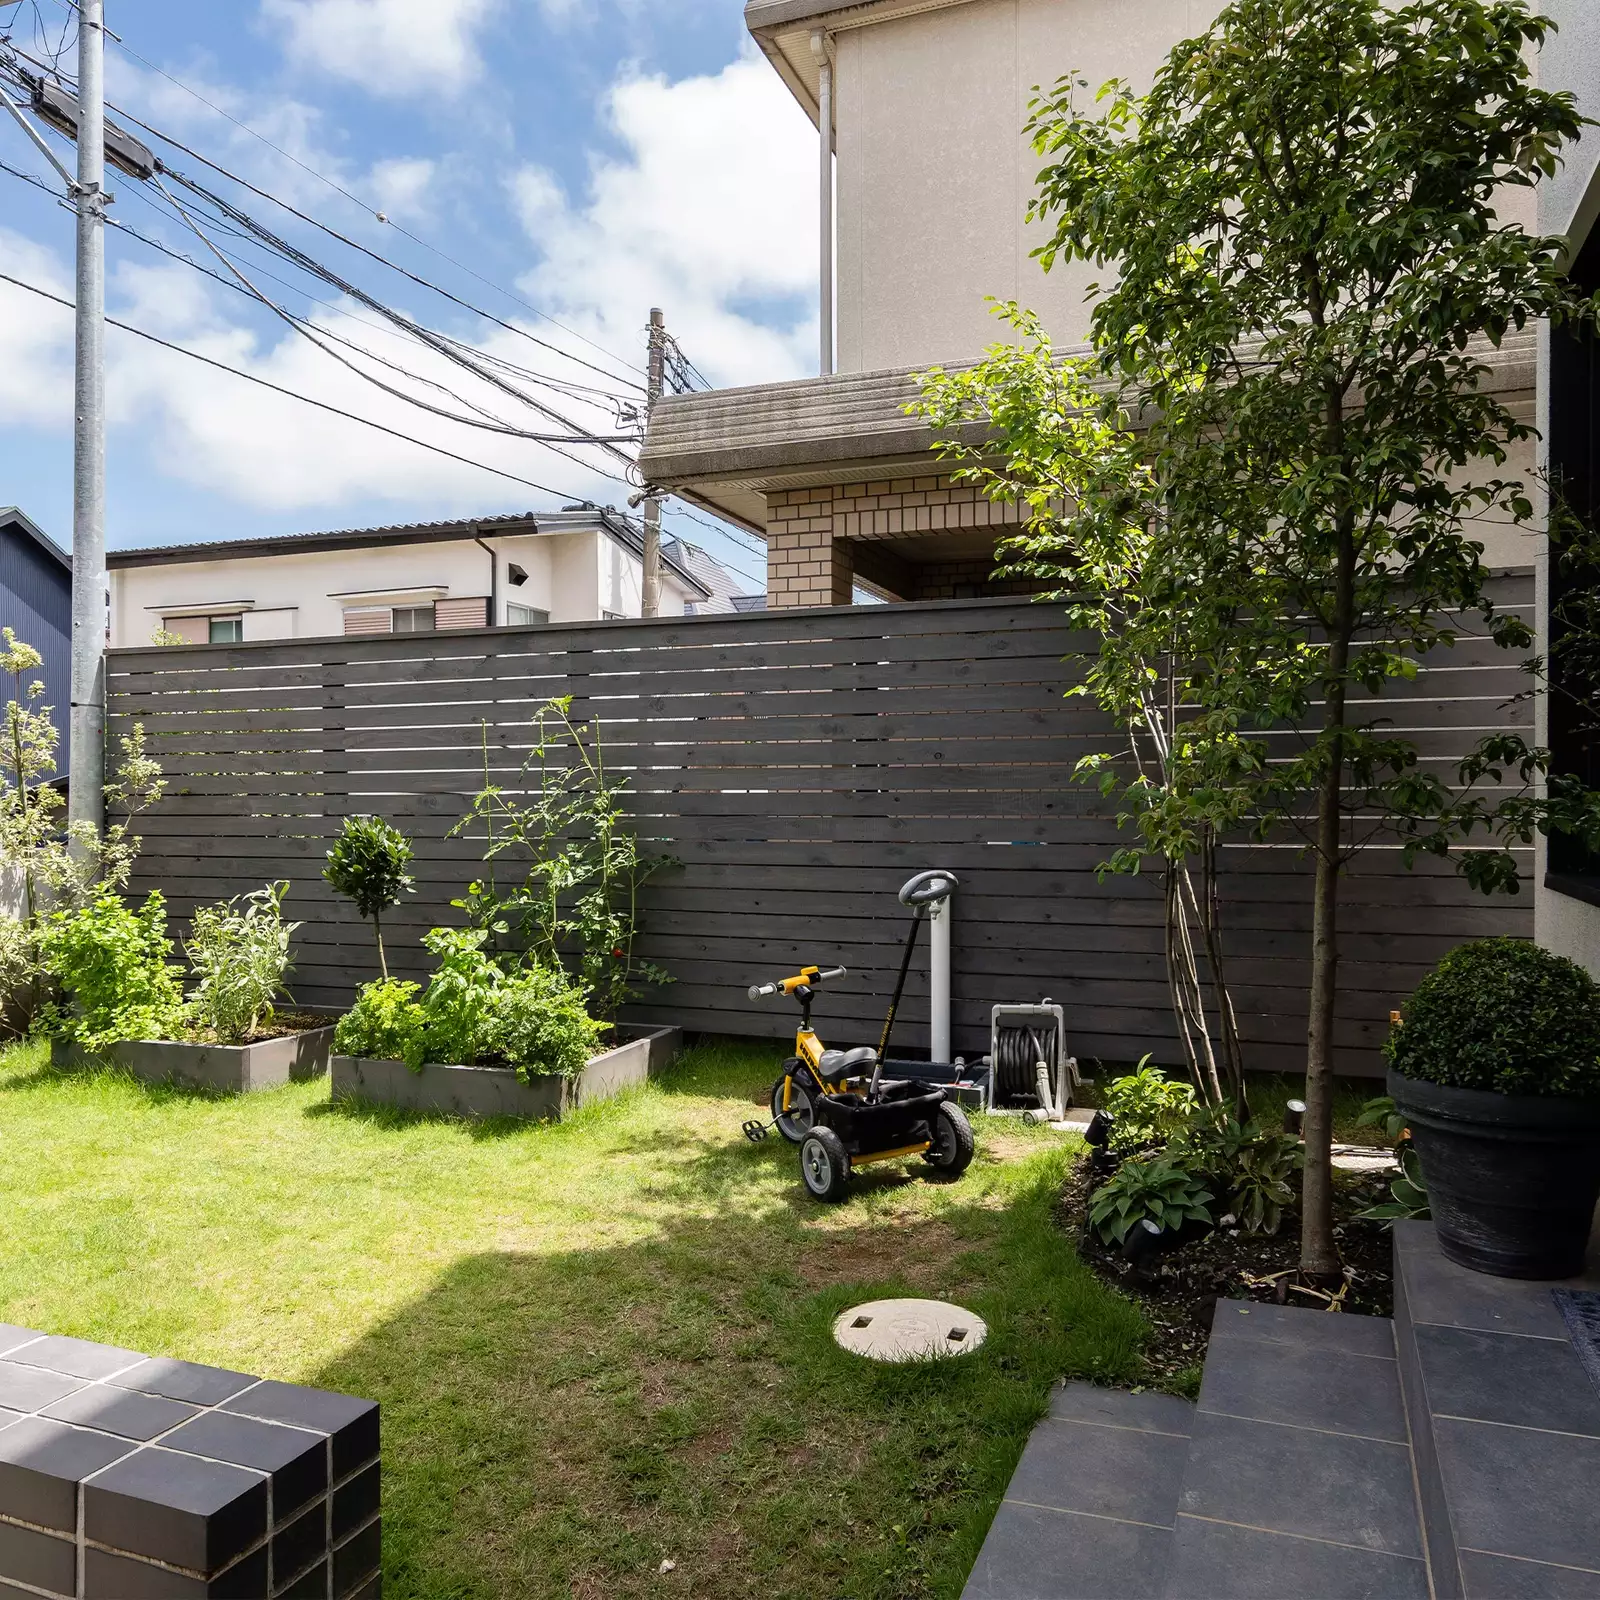 R+houseの物件の庭の写真です。木の塀に囲まれた空間に花壇と芝生がある。